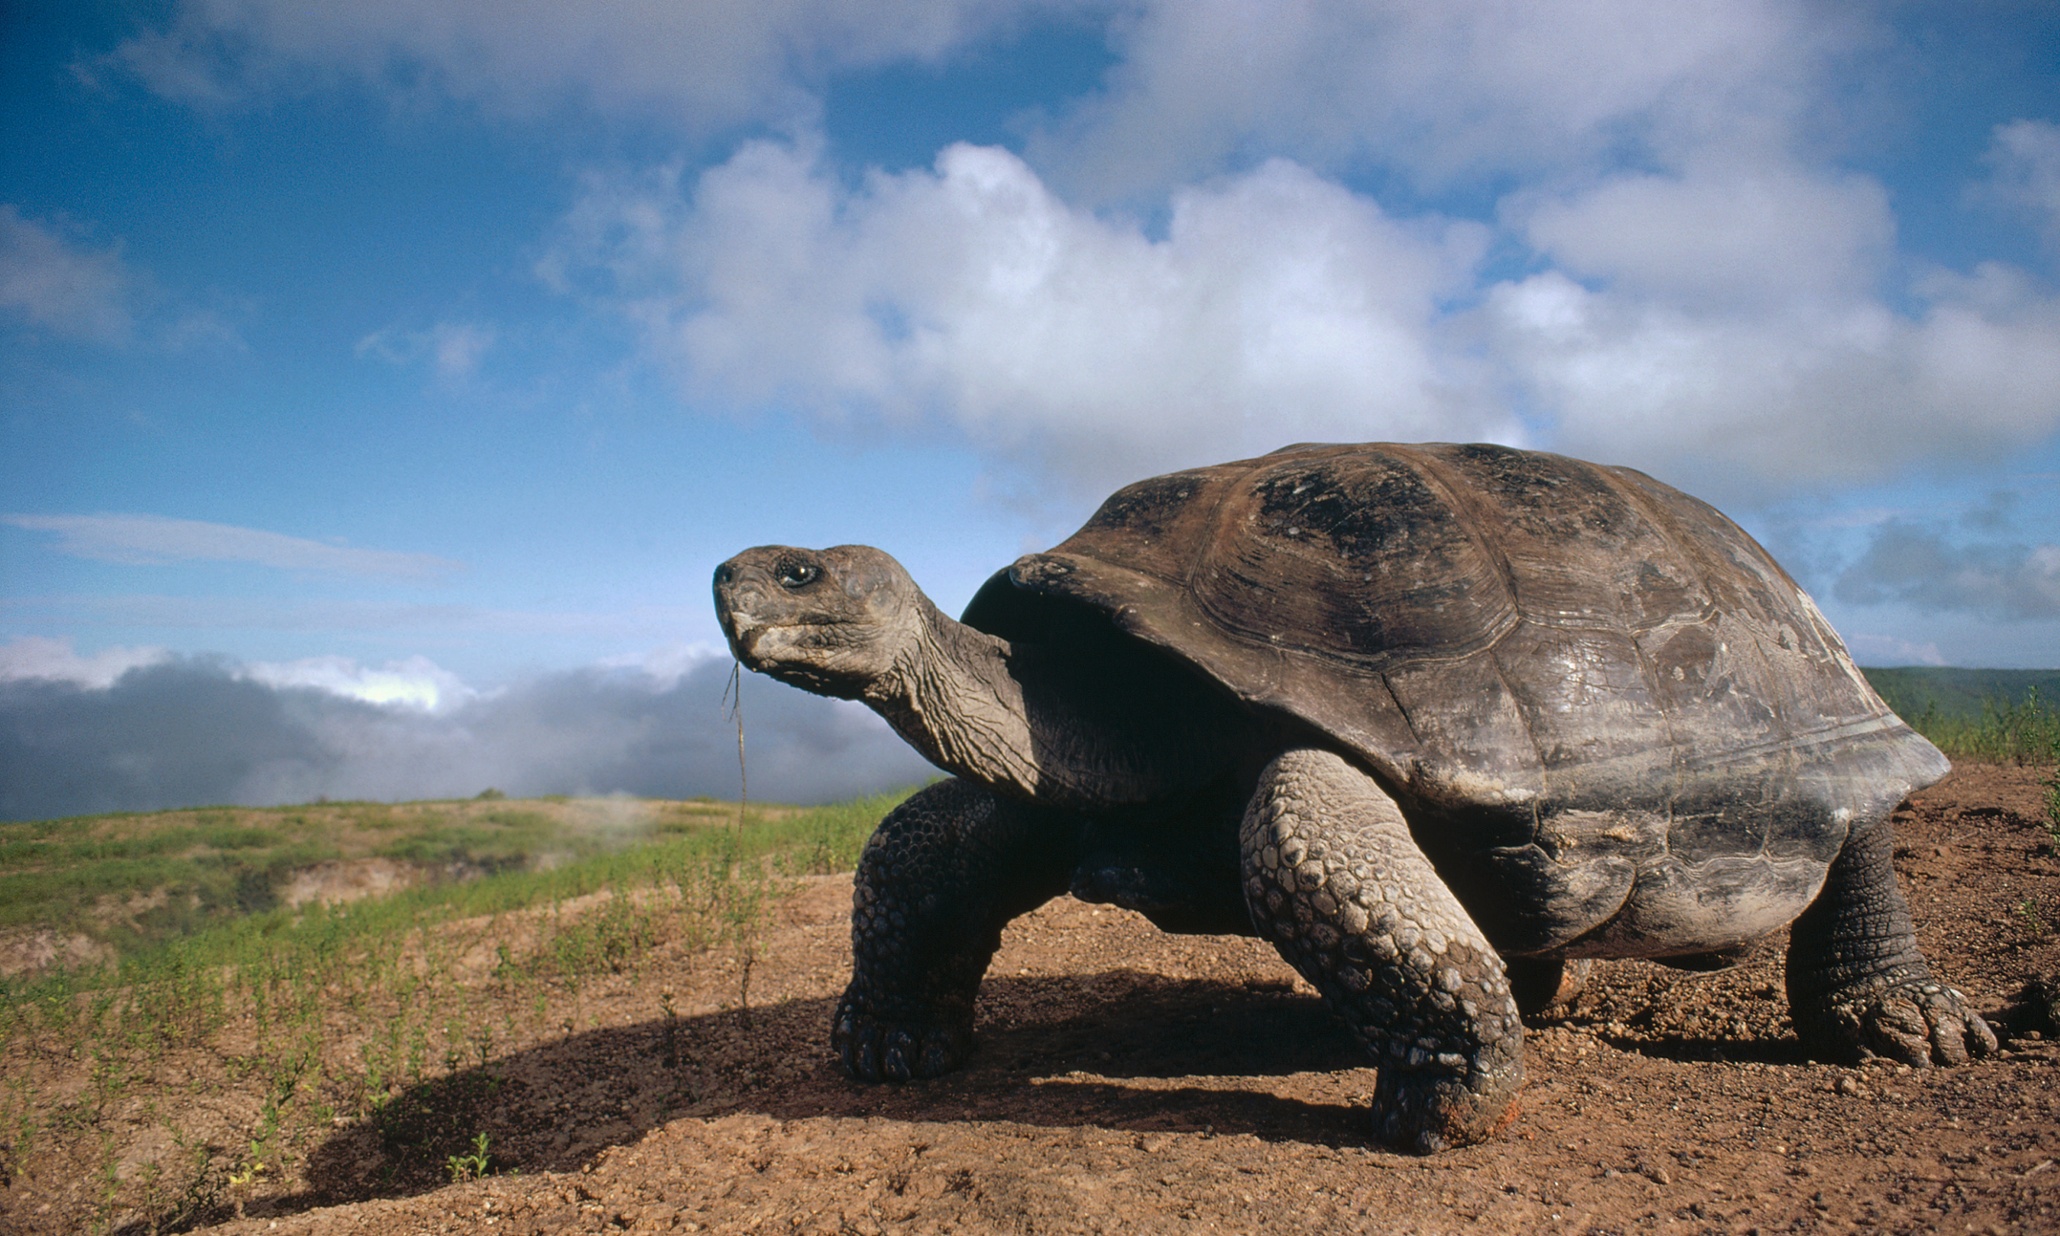 Большая галапагосская черепаха. Галапагосская слоновая черепаха. Галапагосские острова черепахи. Гигантские черепахи с Галапагосских островов. Галапагос — Эквадор черепахи.